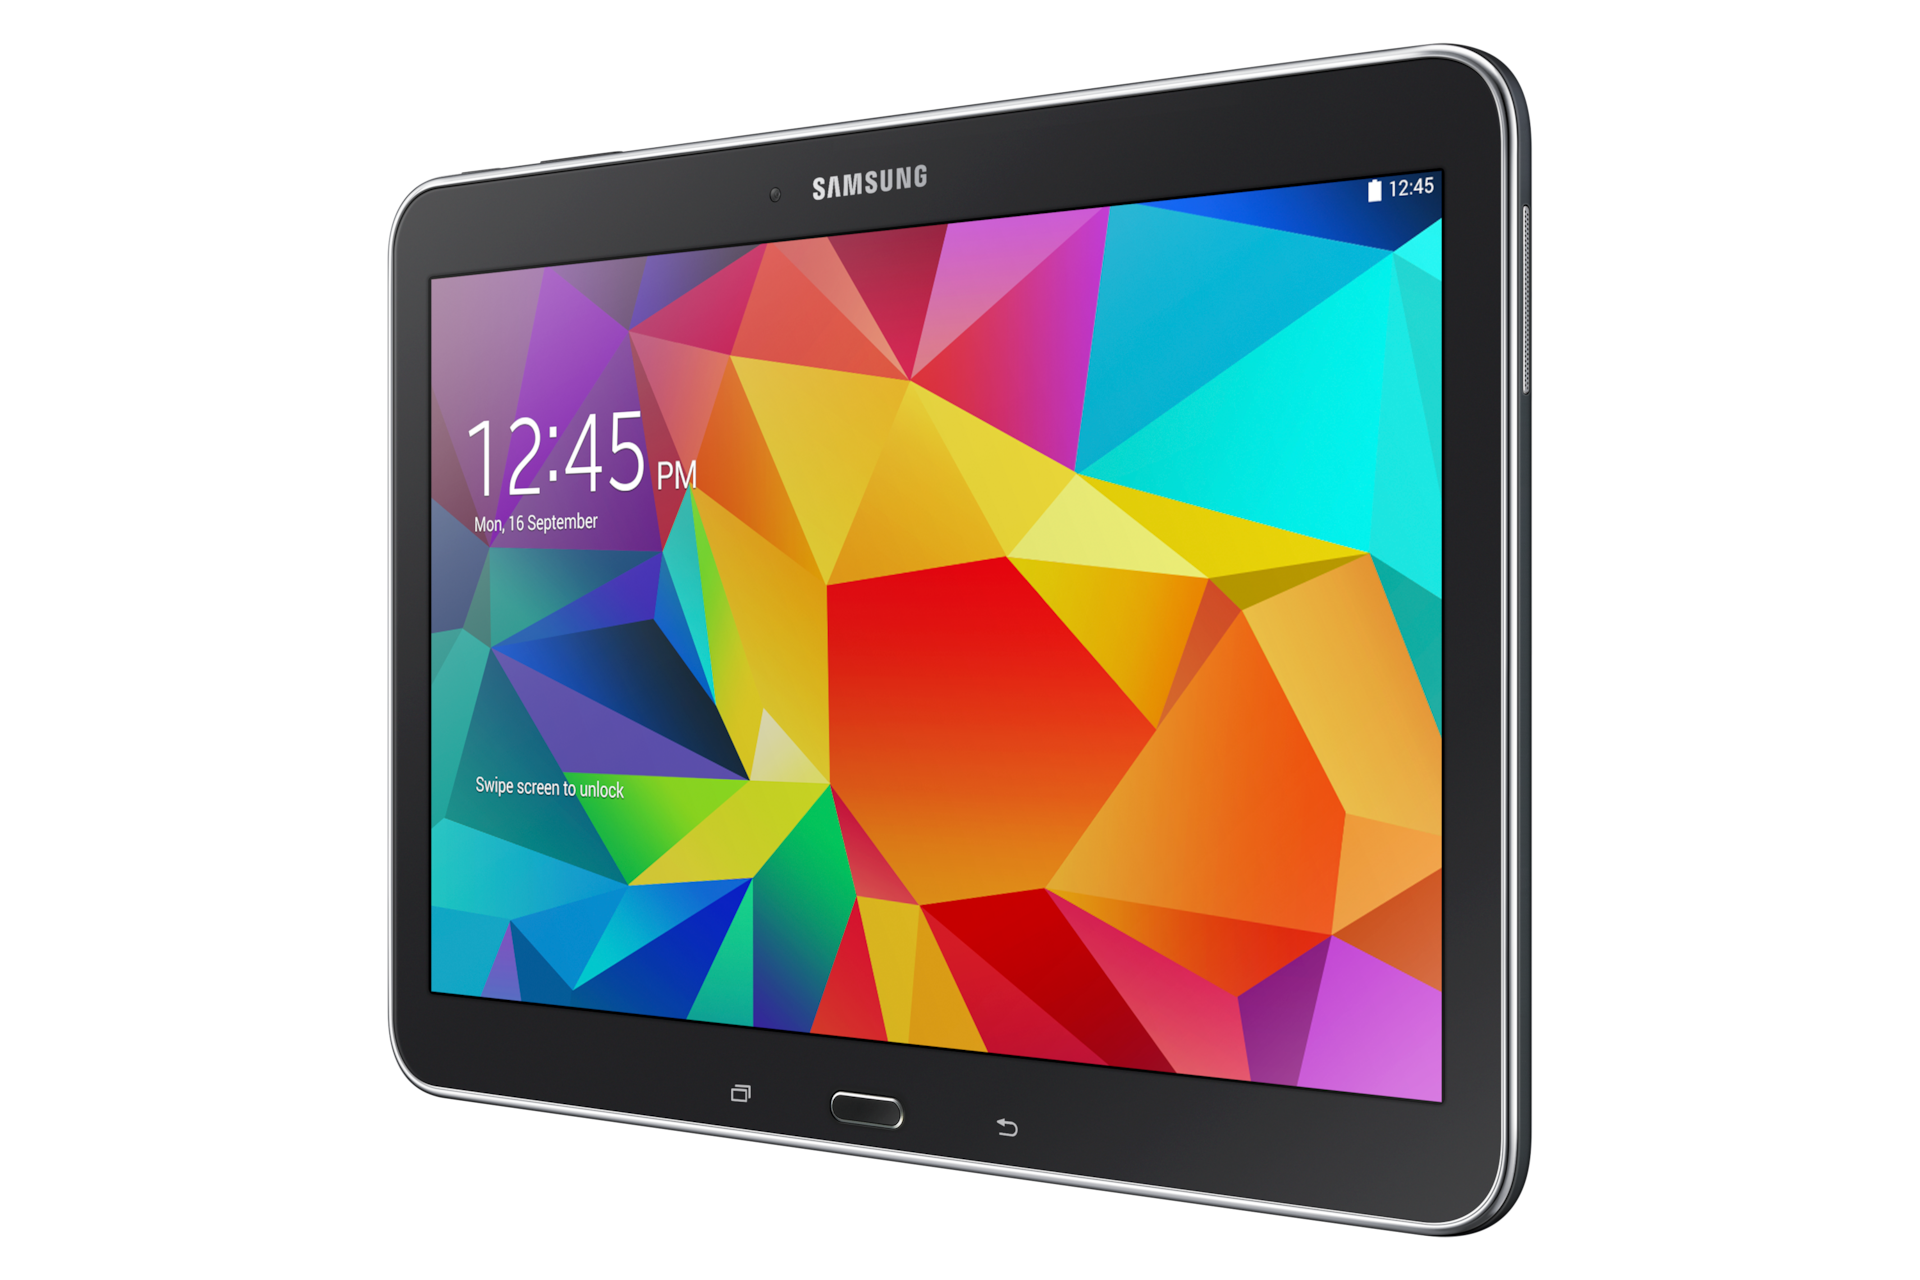 Kekurangan Kelebihan Samsung Galaxy Tab 4 8 0